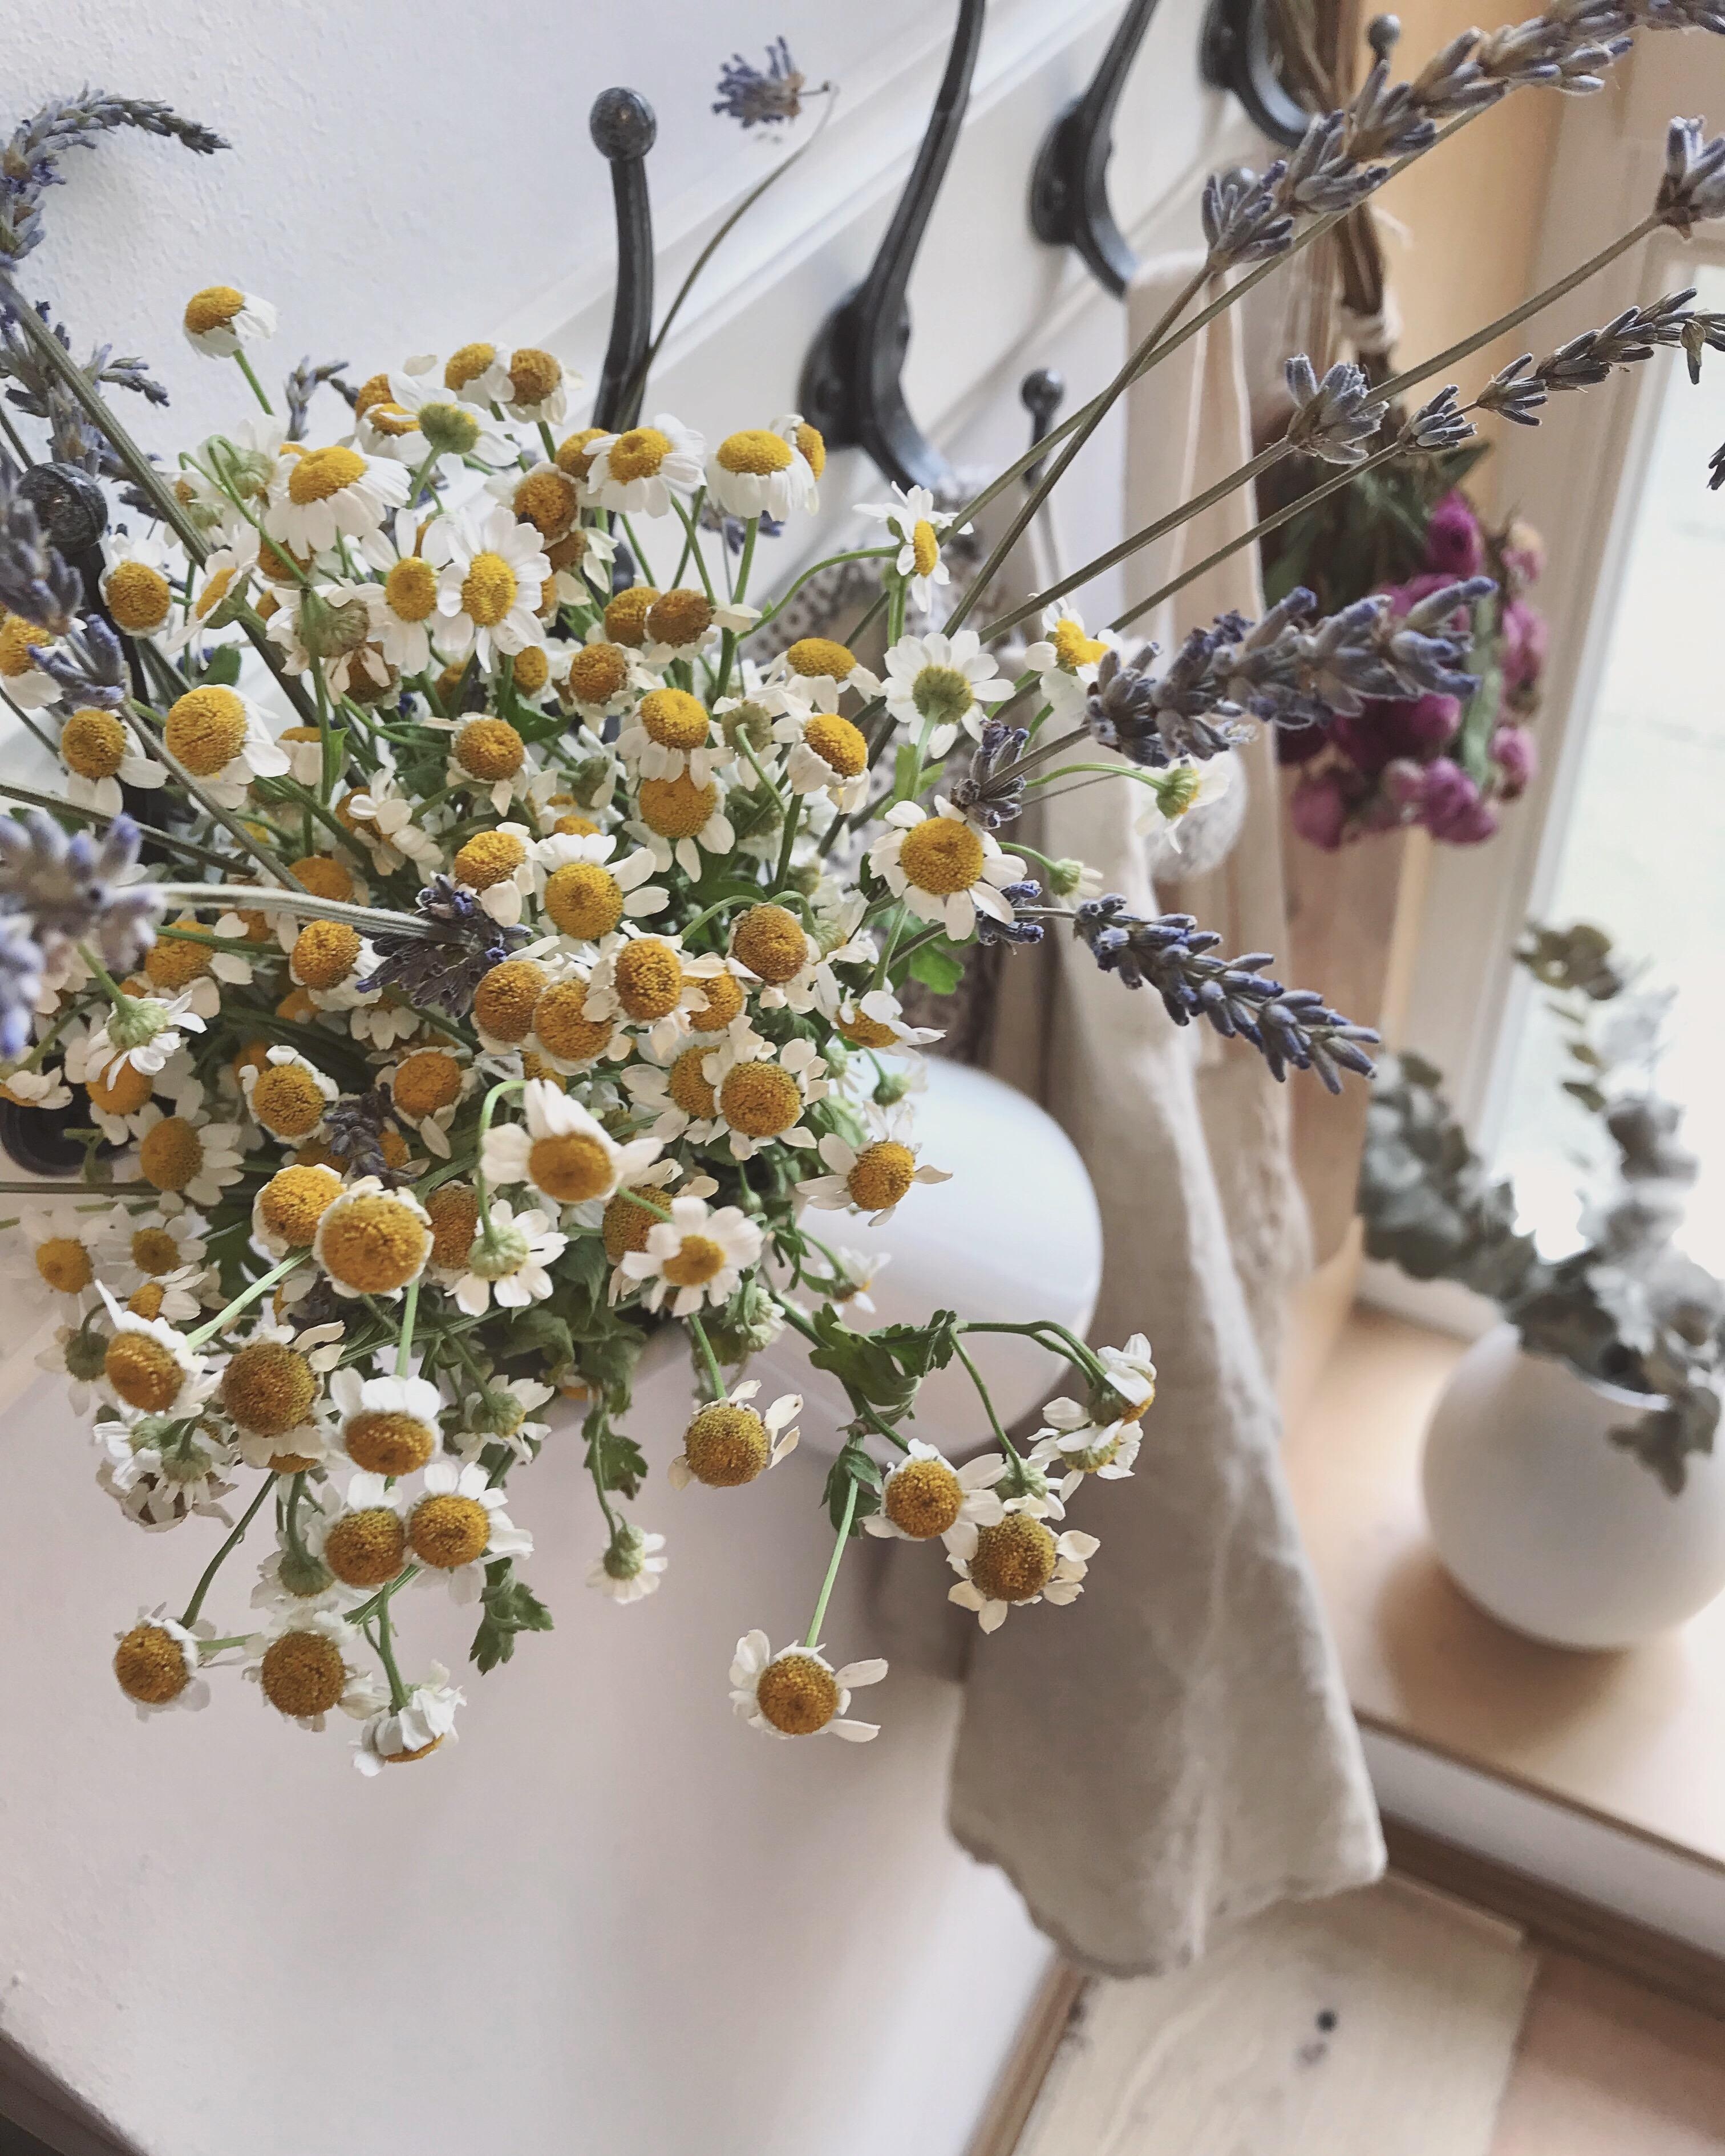 Heute gibt es Kamille und Lavendel zum #freshflowerfriday happy weekend 💛💜
#blumenliebe#flowers#couchstyle#küche